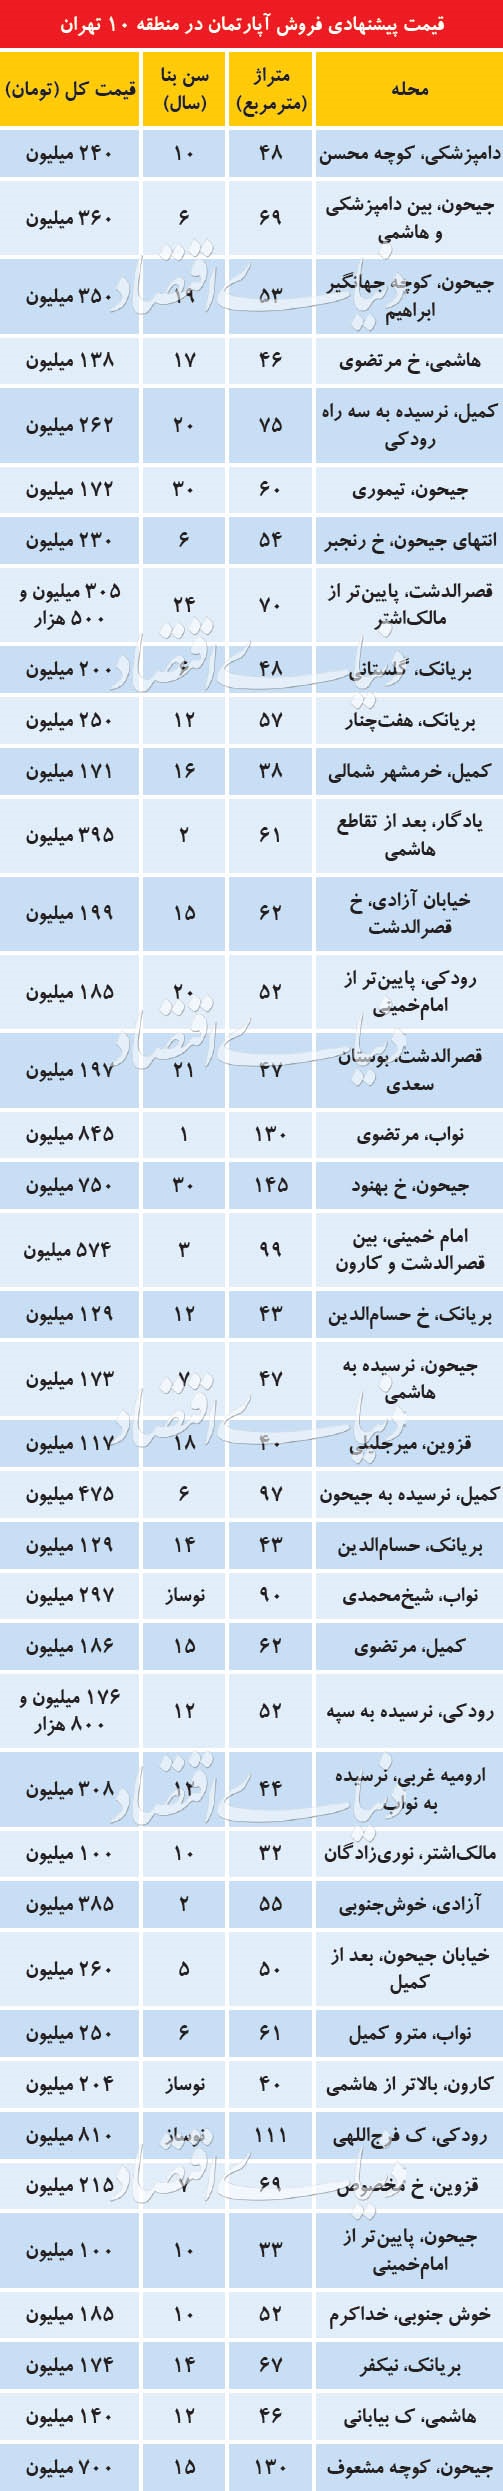 قیمت آپارتمان در منطقه 10 تهران